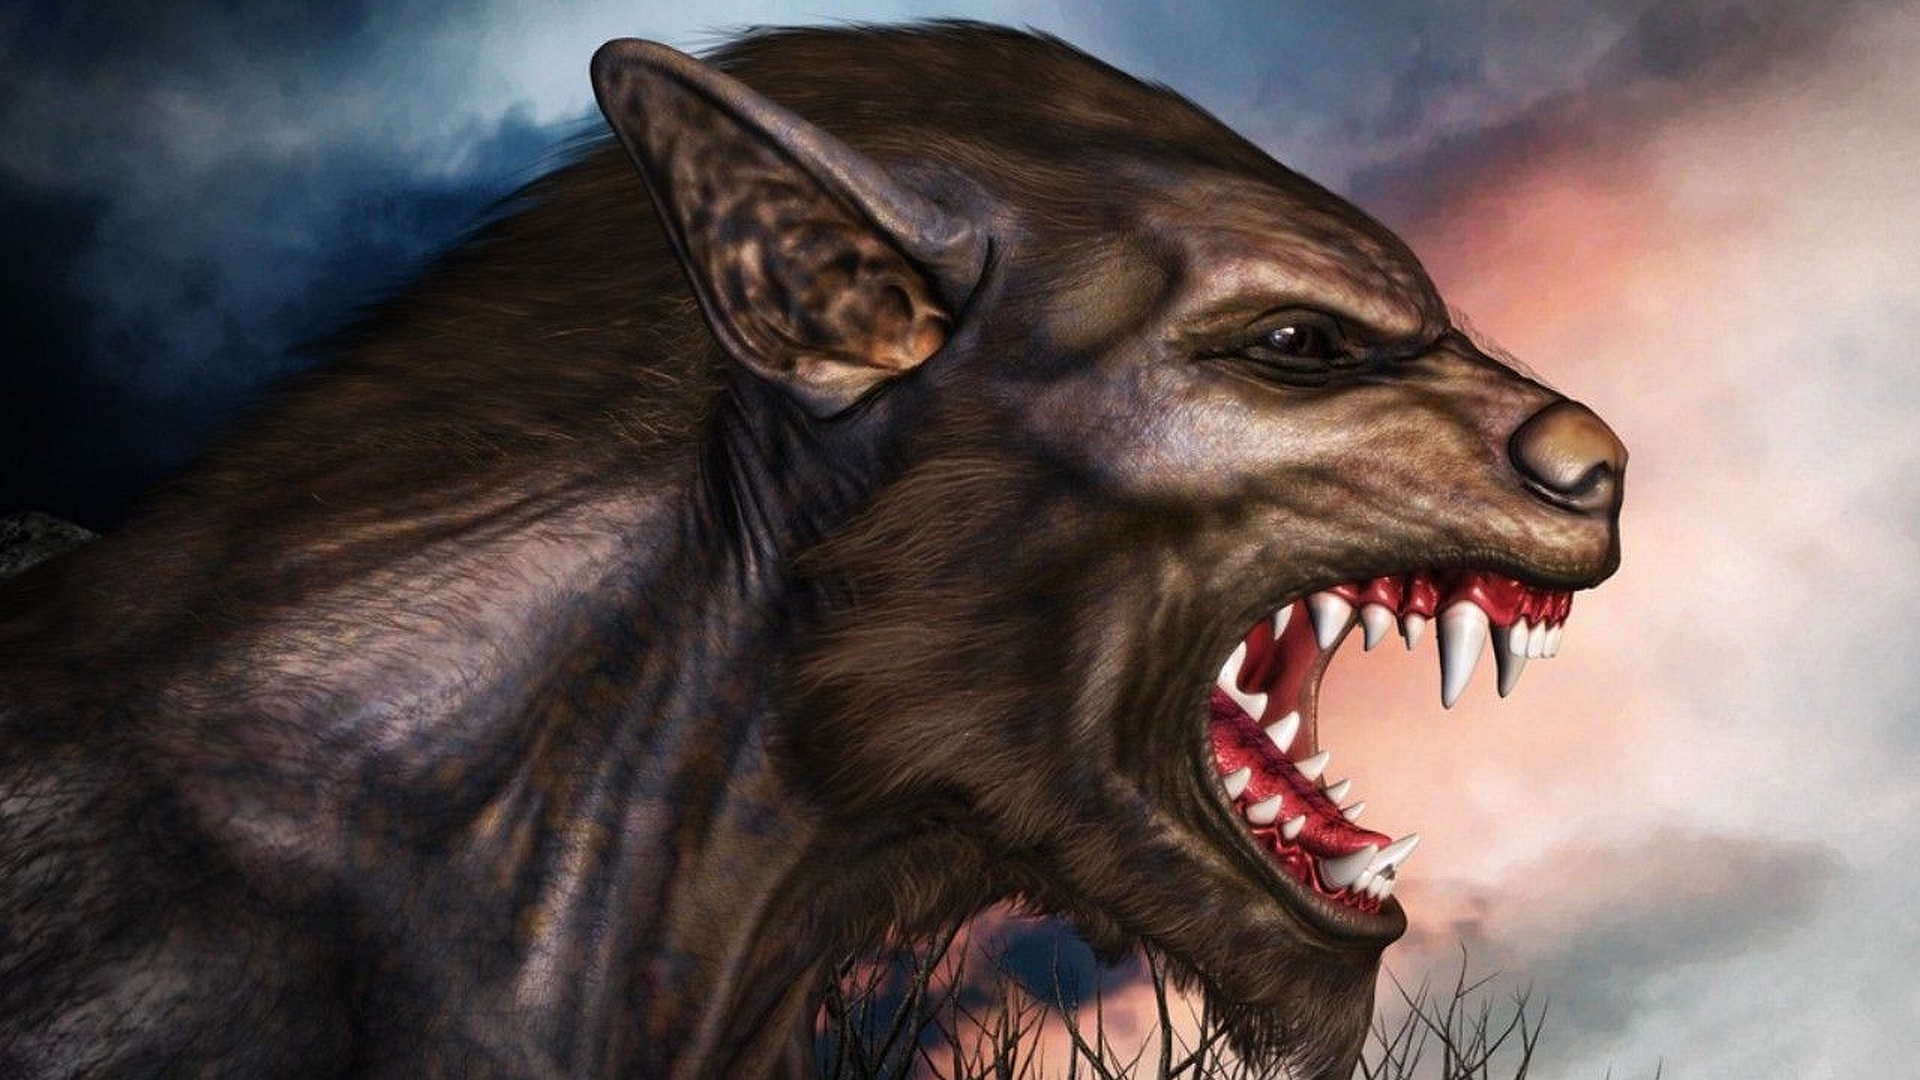 Dark Werewolf HD Wallpaper | Background Image | 1920x1080